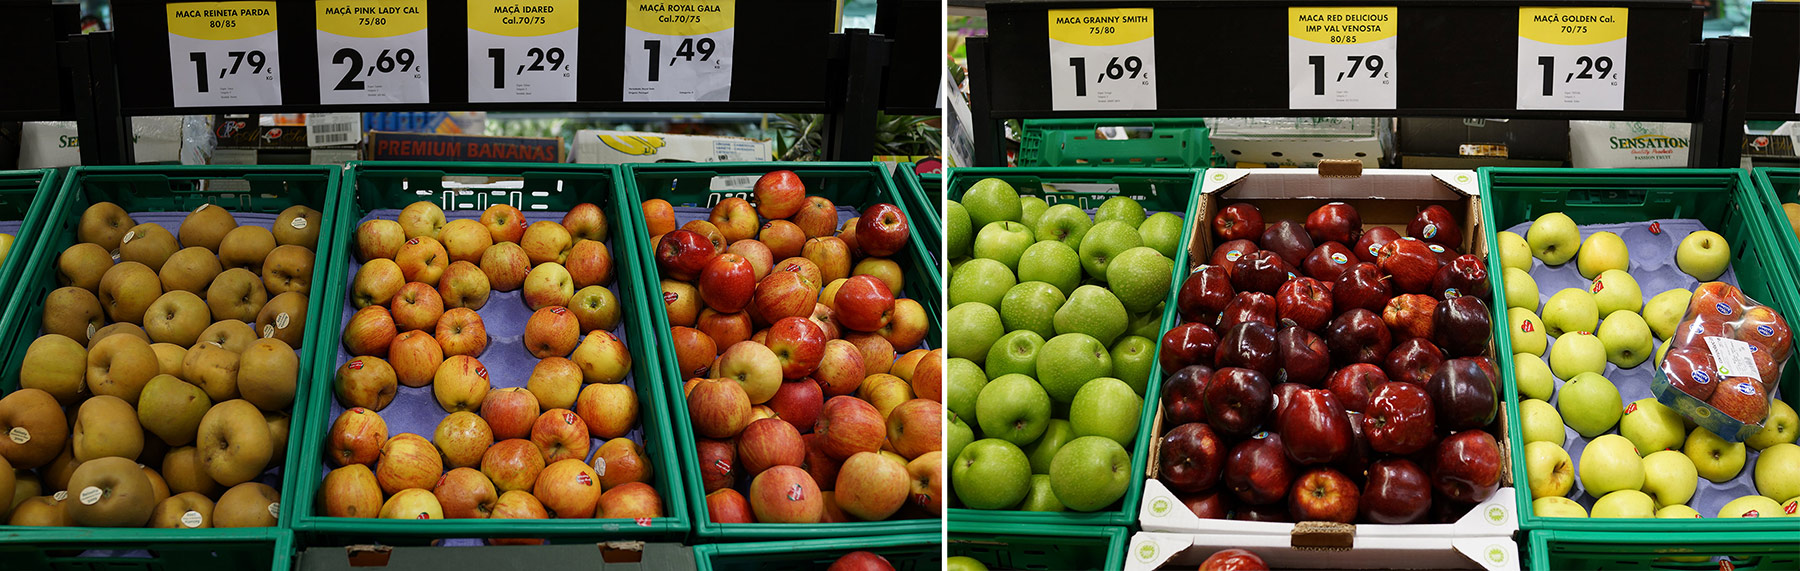 Цены в португальском супермаркете. Насколько выше/ниже российских? DSC02574